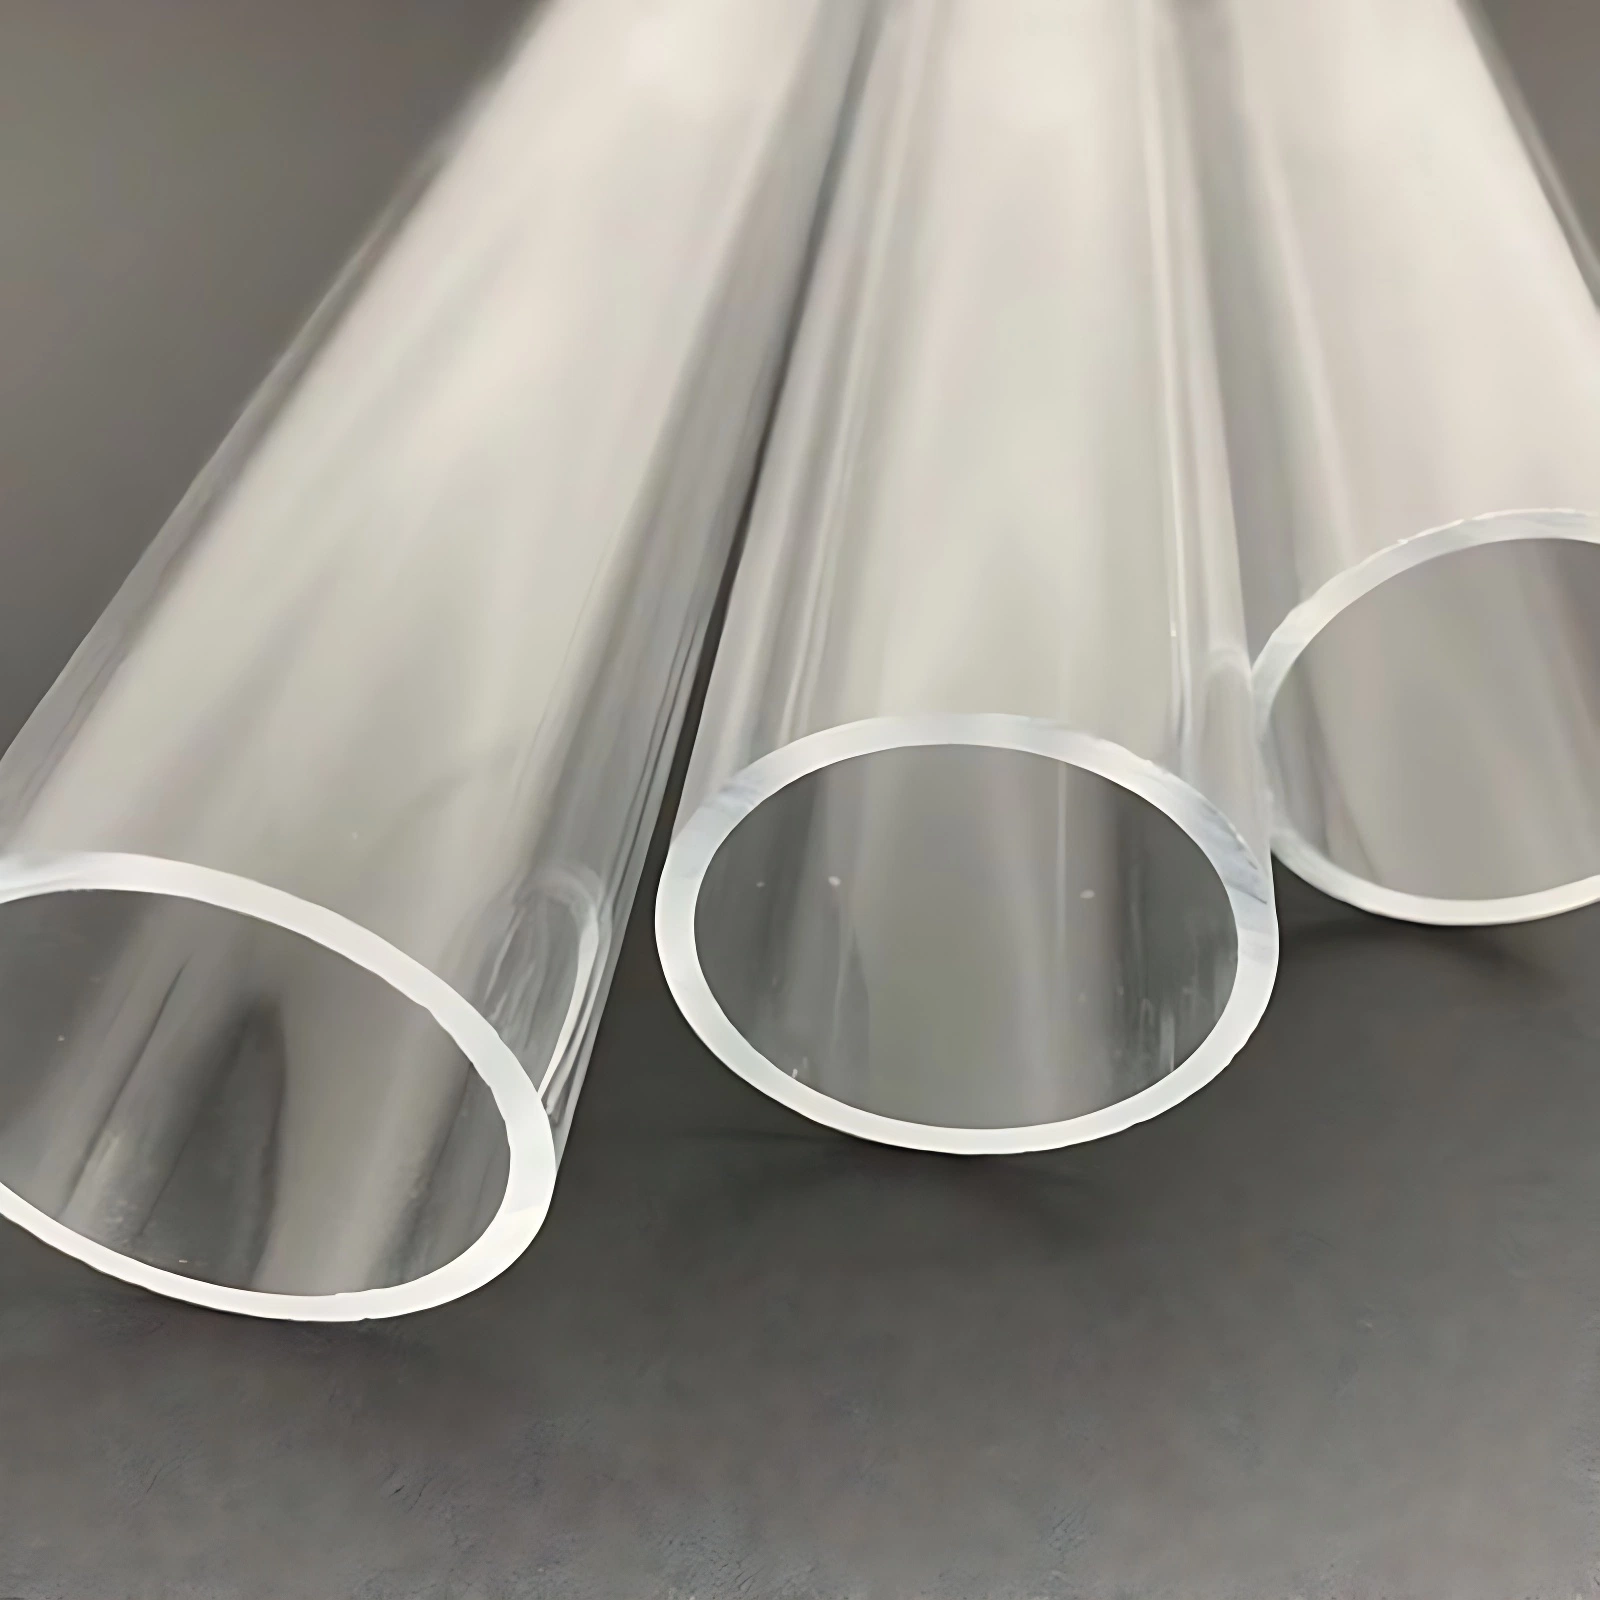 Hohe Festigkeit Transparent Acryl Kunststoff Rohr und Stange Größe angepasst